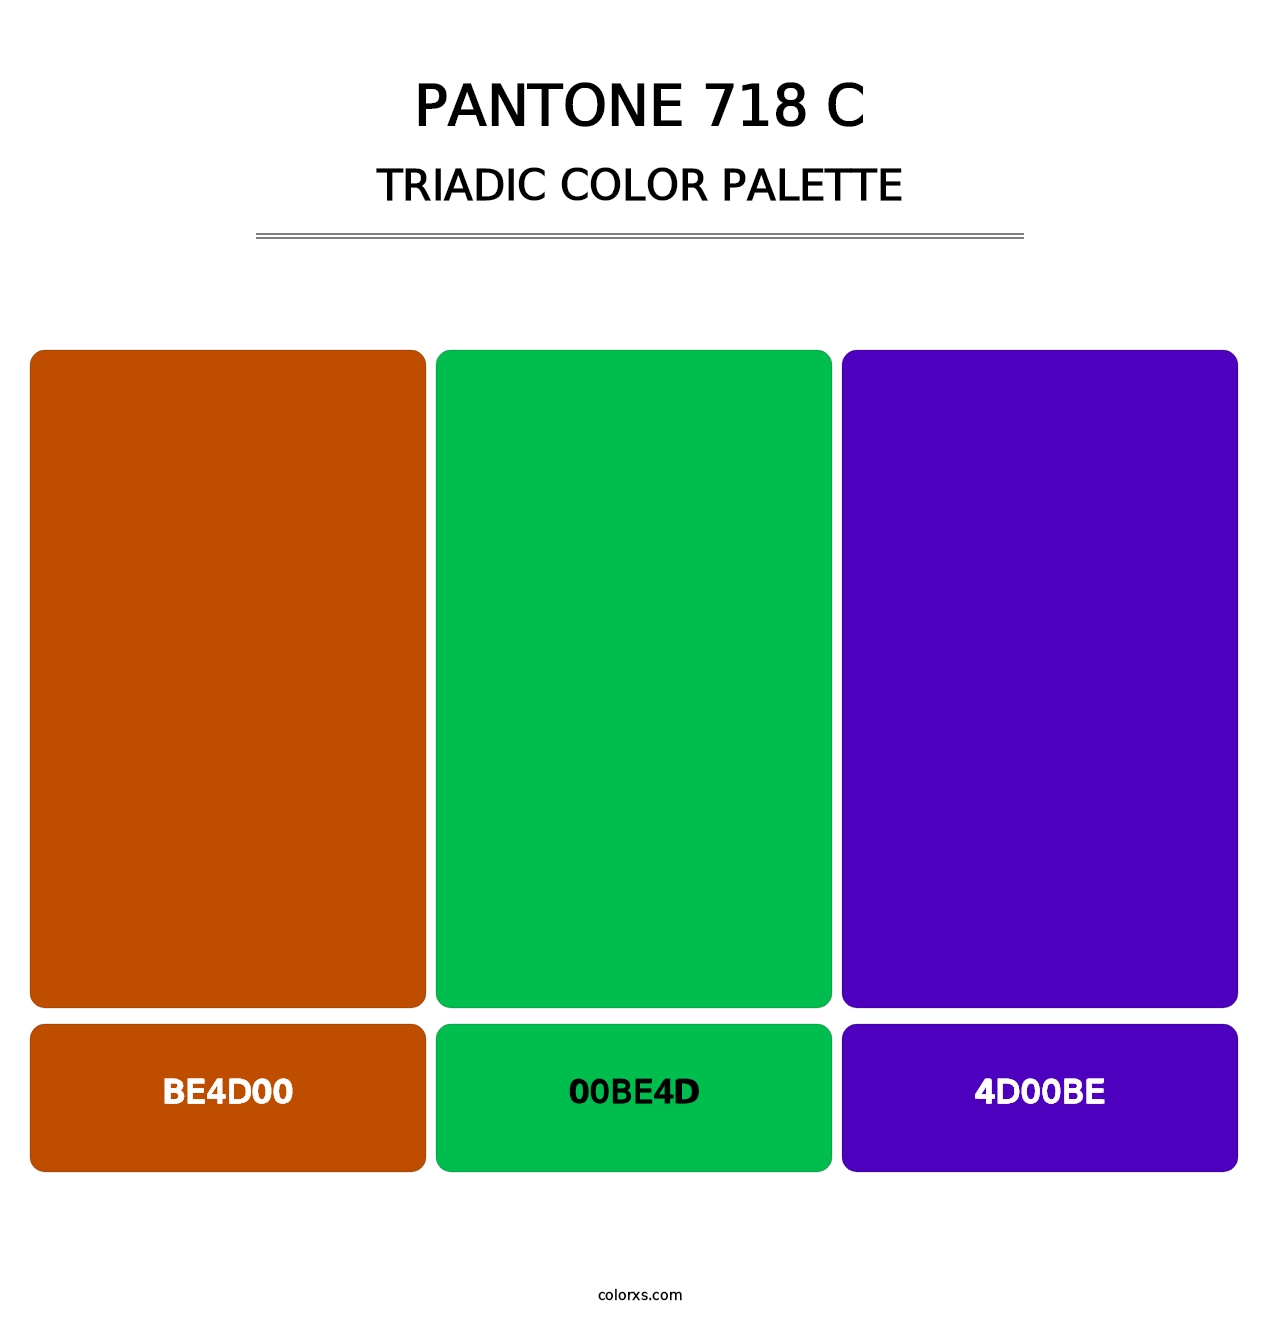 PANTONE 718 C - Triadic Color Palette